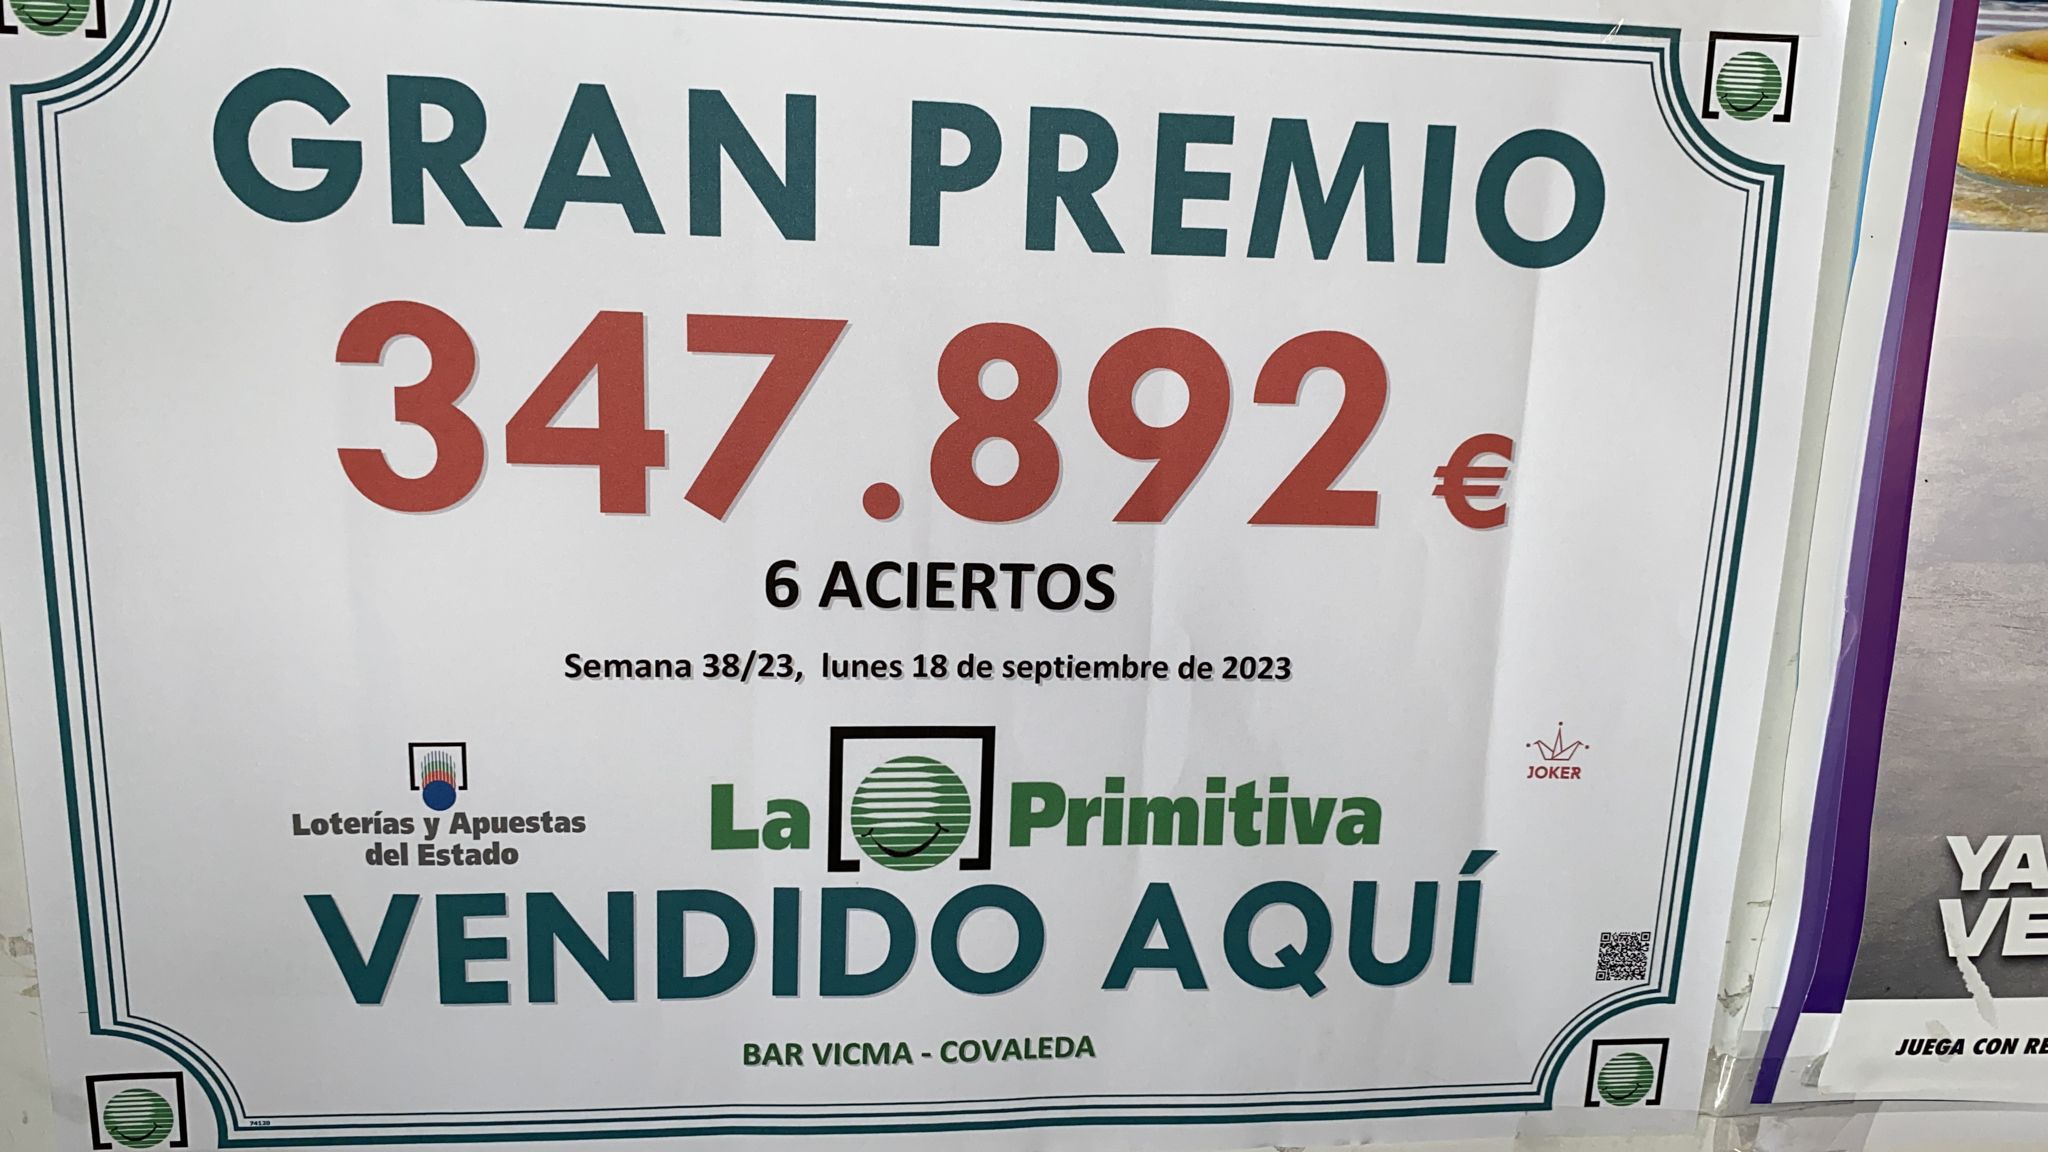 La Primitiva deja en Covaleda un premio de 347.892€ en un boleto de seis aciertos